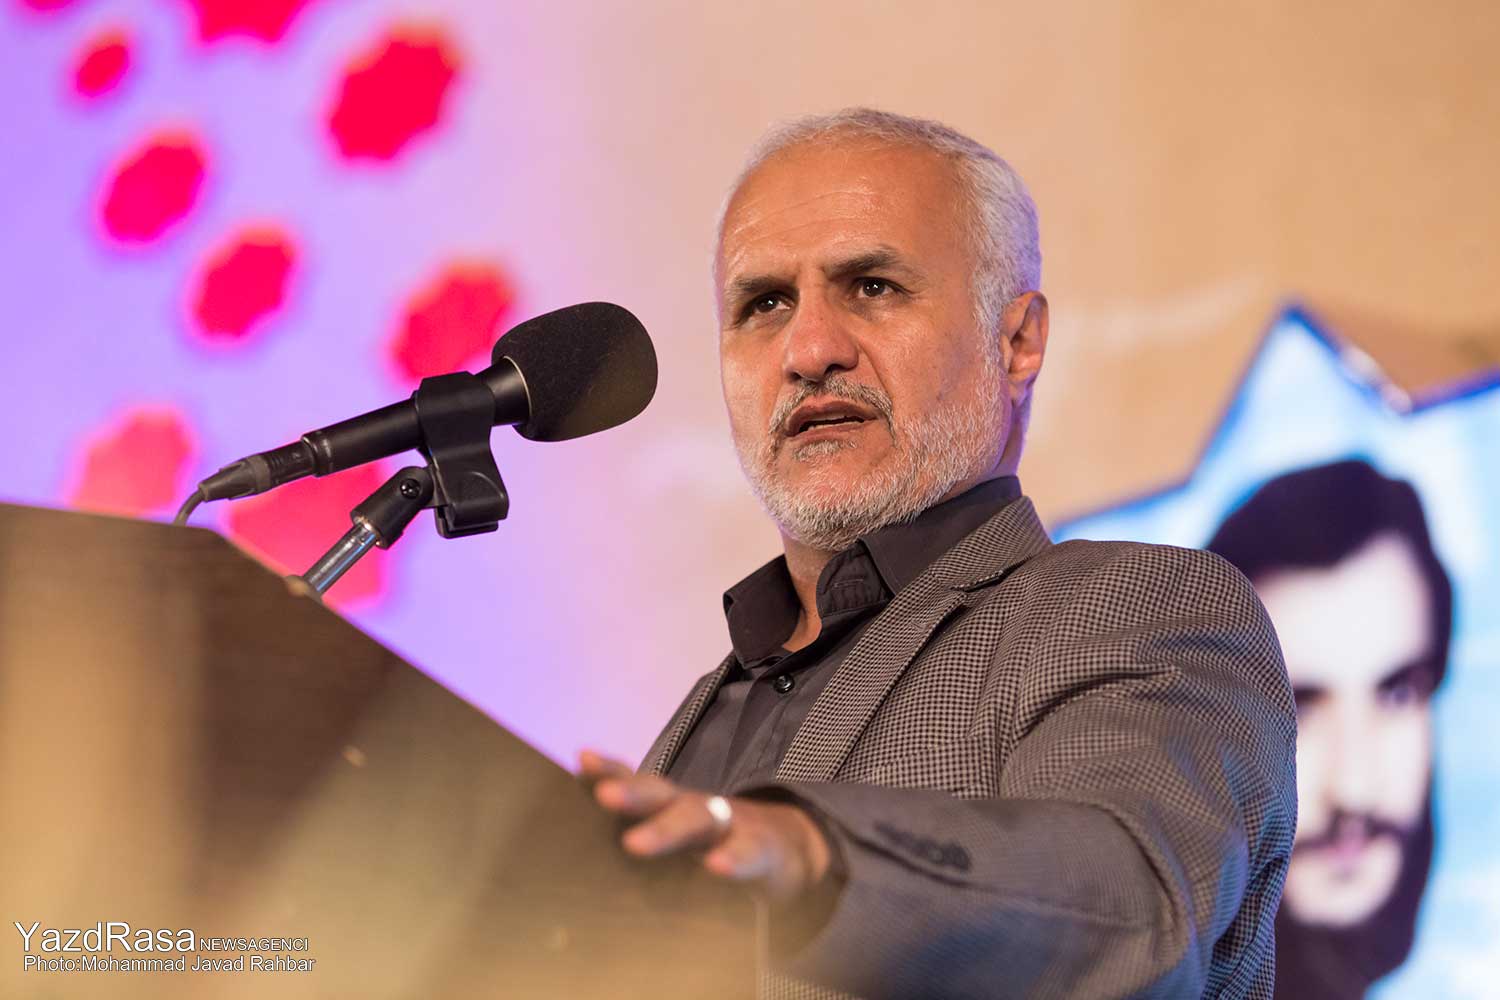 سخنرانی استاد حسن عباسی در یزد - یادواره ستارگان راه (یادواره شهید صدوقی و شهدای شهرستان یزد)